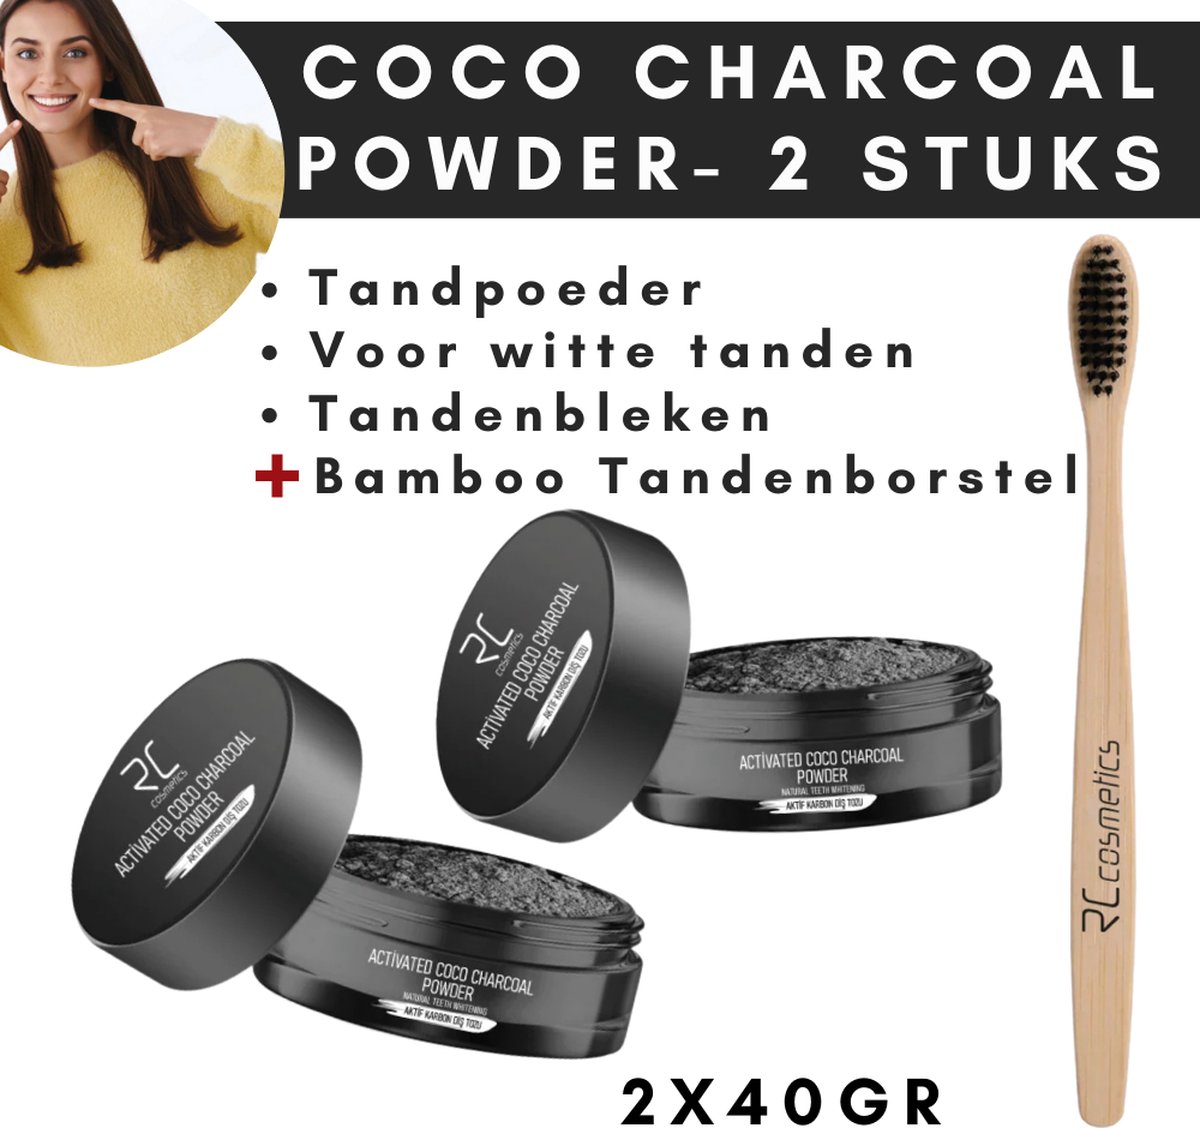 Activated Charcoal Whitening Tandpoeder 2 stuks - Tanden bleken - Tooth Powder - 2x40gr - Zwarte bleek poeder